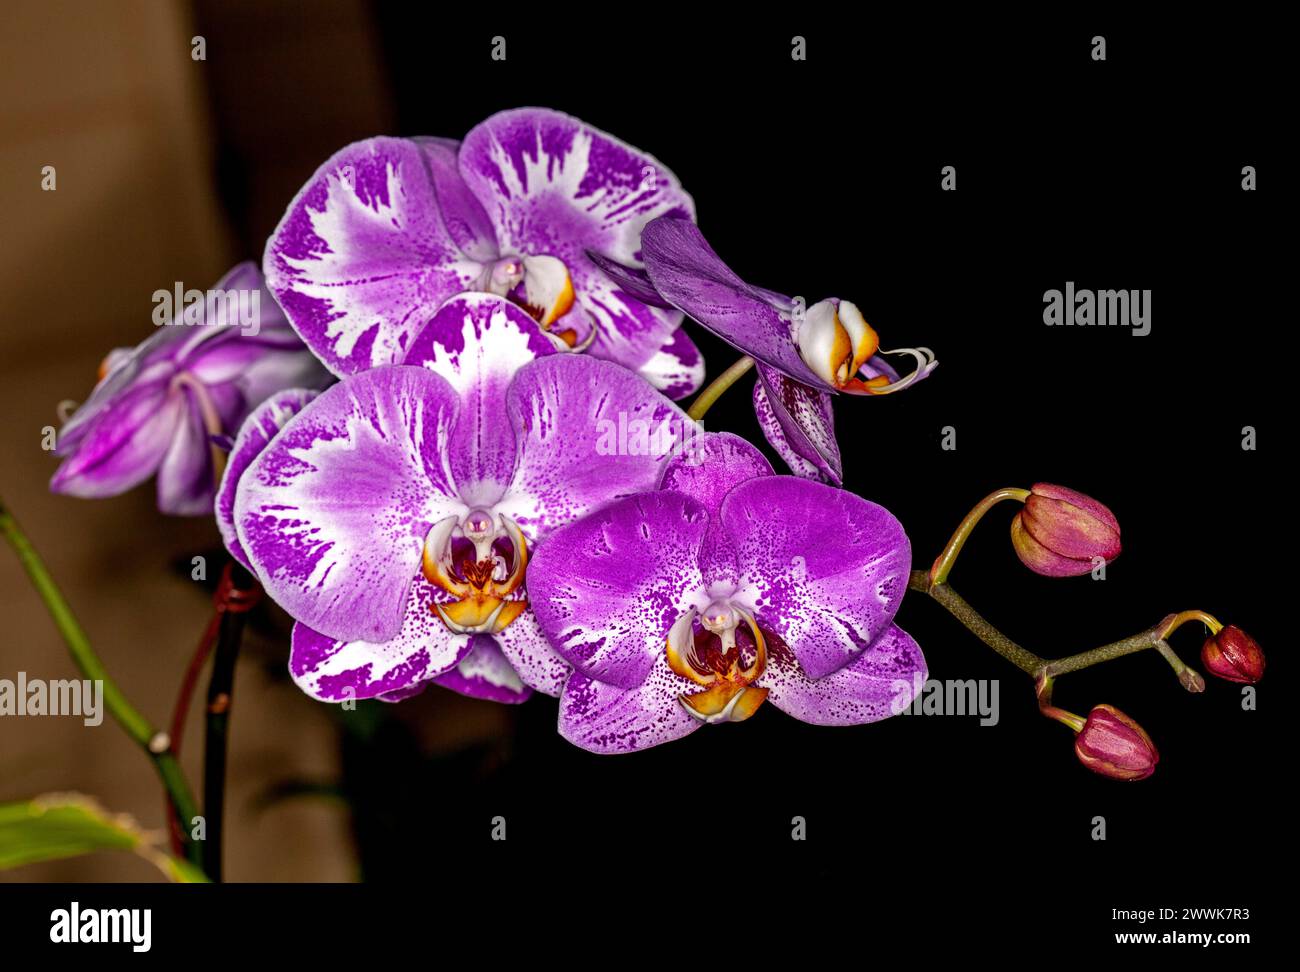 Gruppo di spettacolari grandi e vividi fiori viola e bianchi di orchidea Phalaenopsis, orchidea Moth, su sfondo scuro Foto Stock